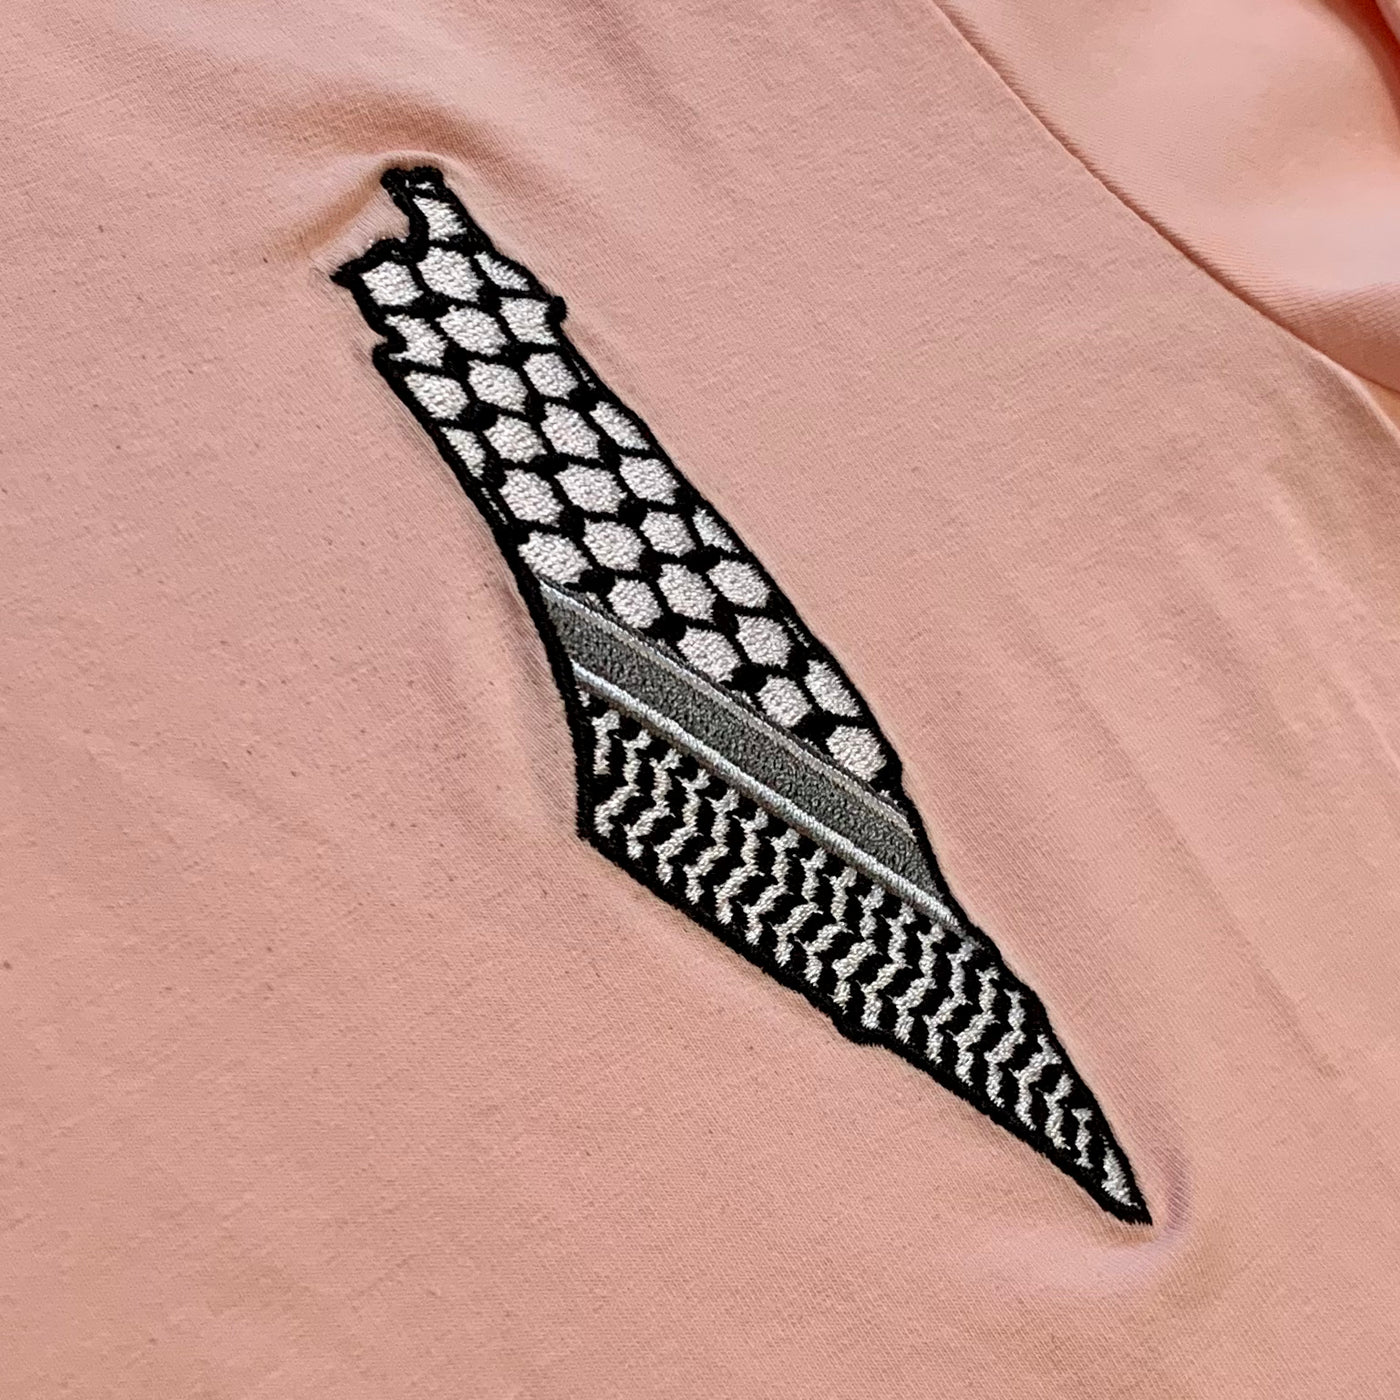 Kufiya Map Embroidered Shirt Pink Long Sleeve